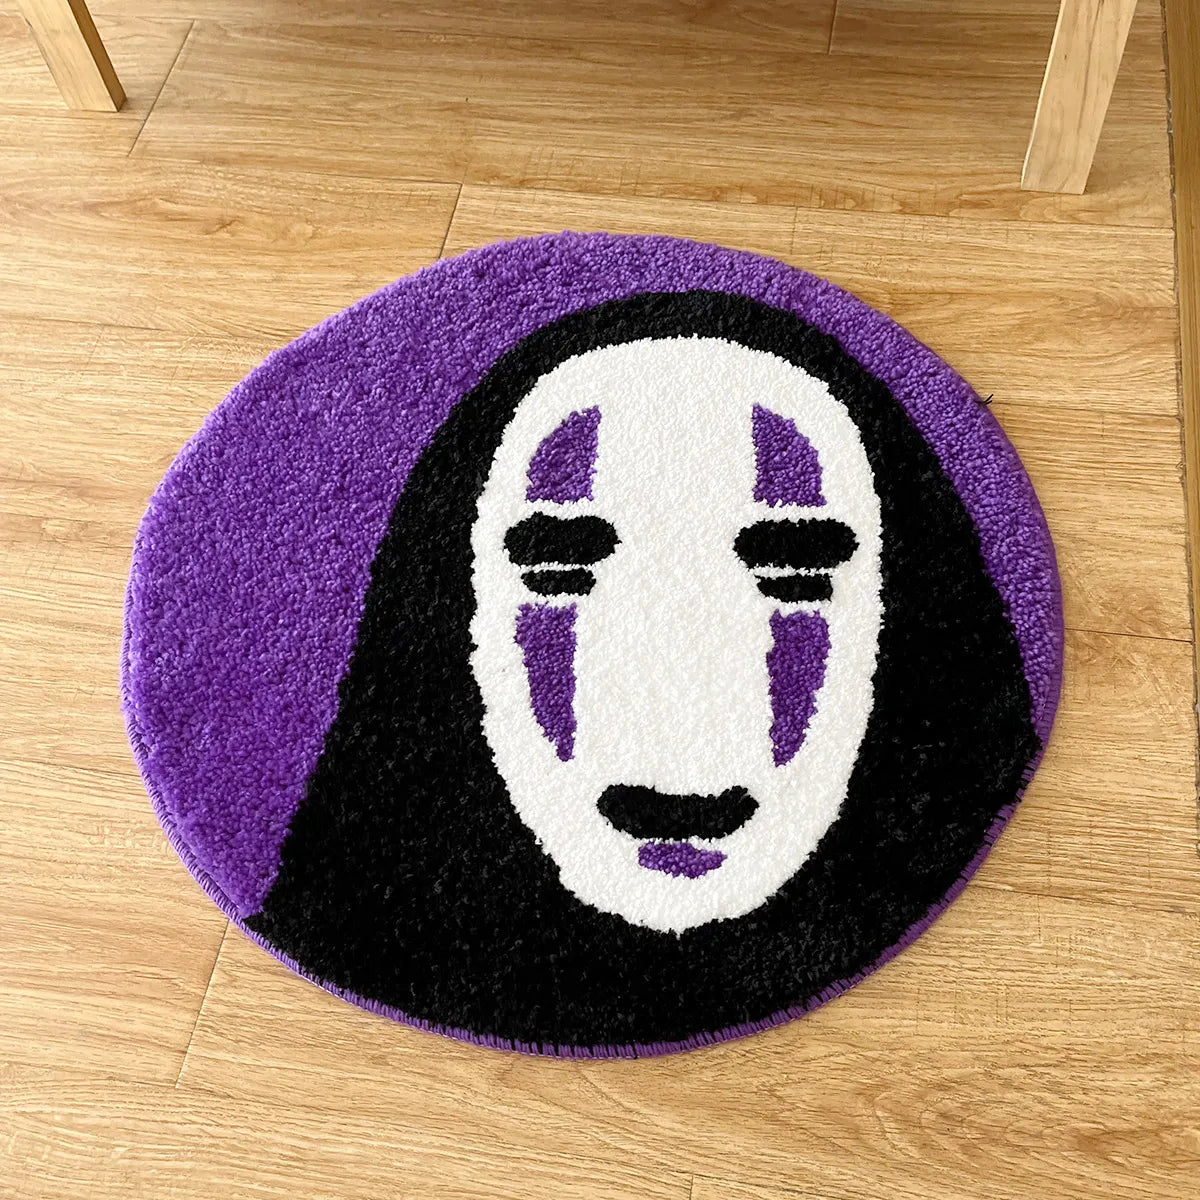 Soft Smile Face Tufted Rug - Handmade Cartoon Style Floor Mat